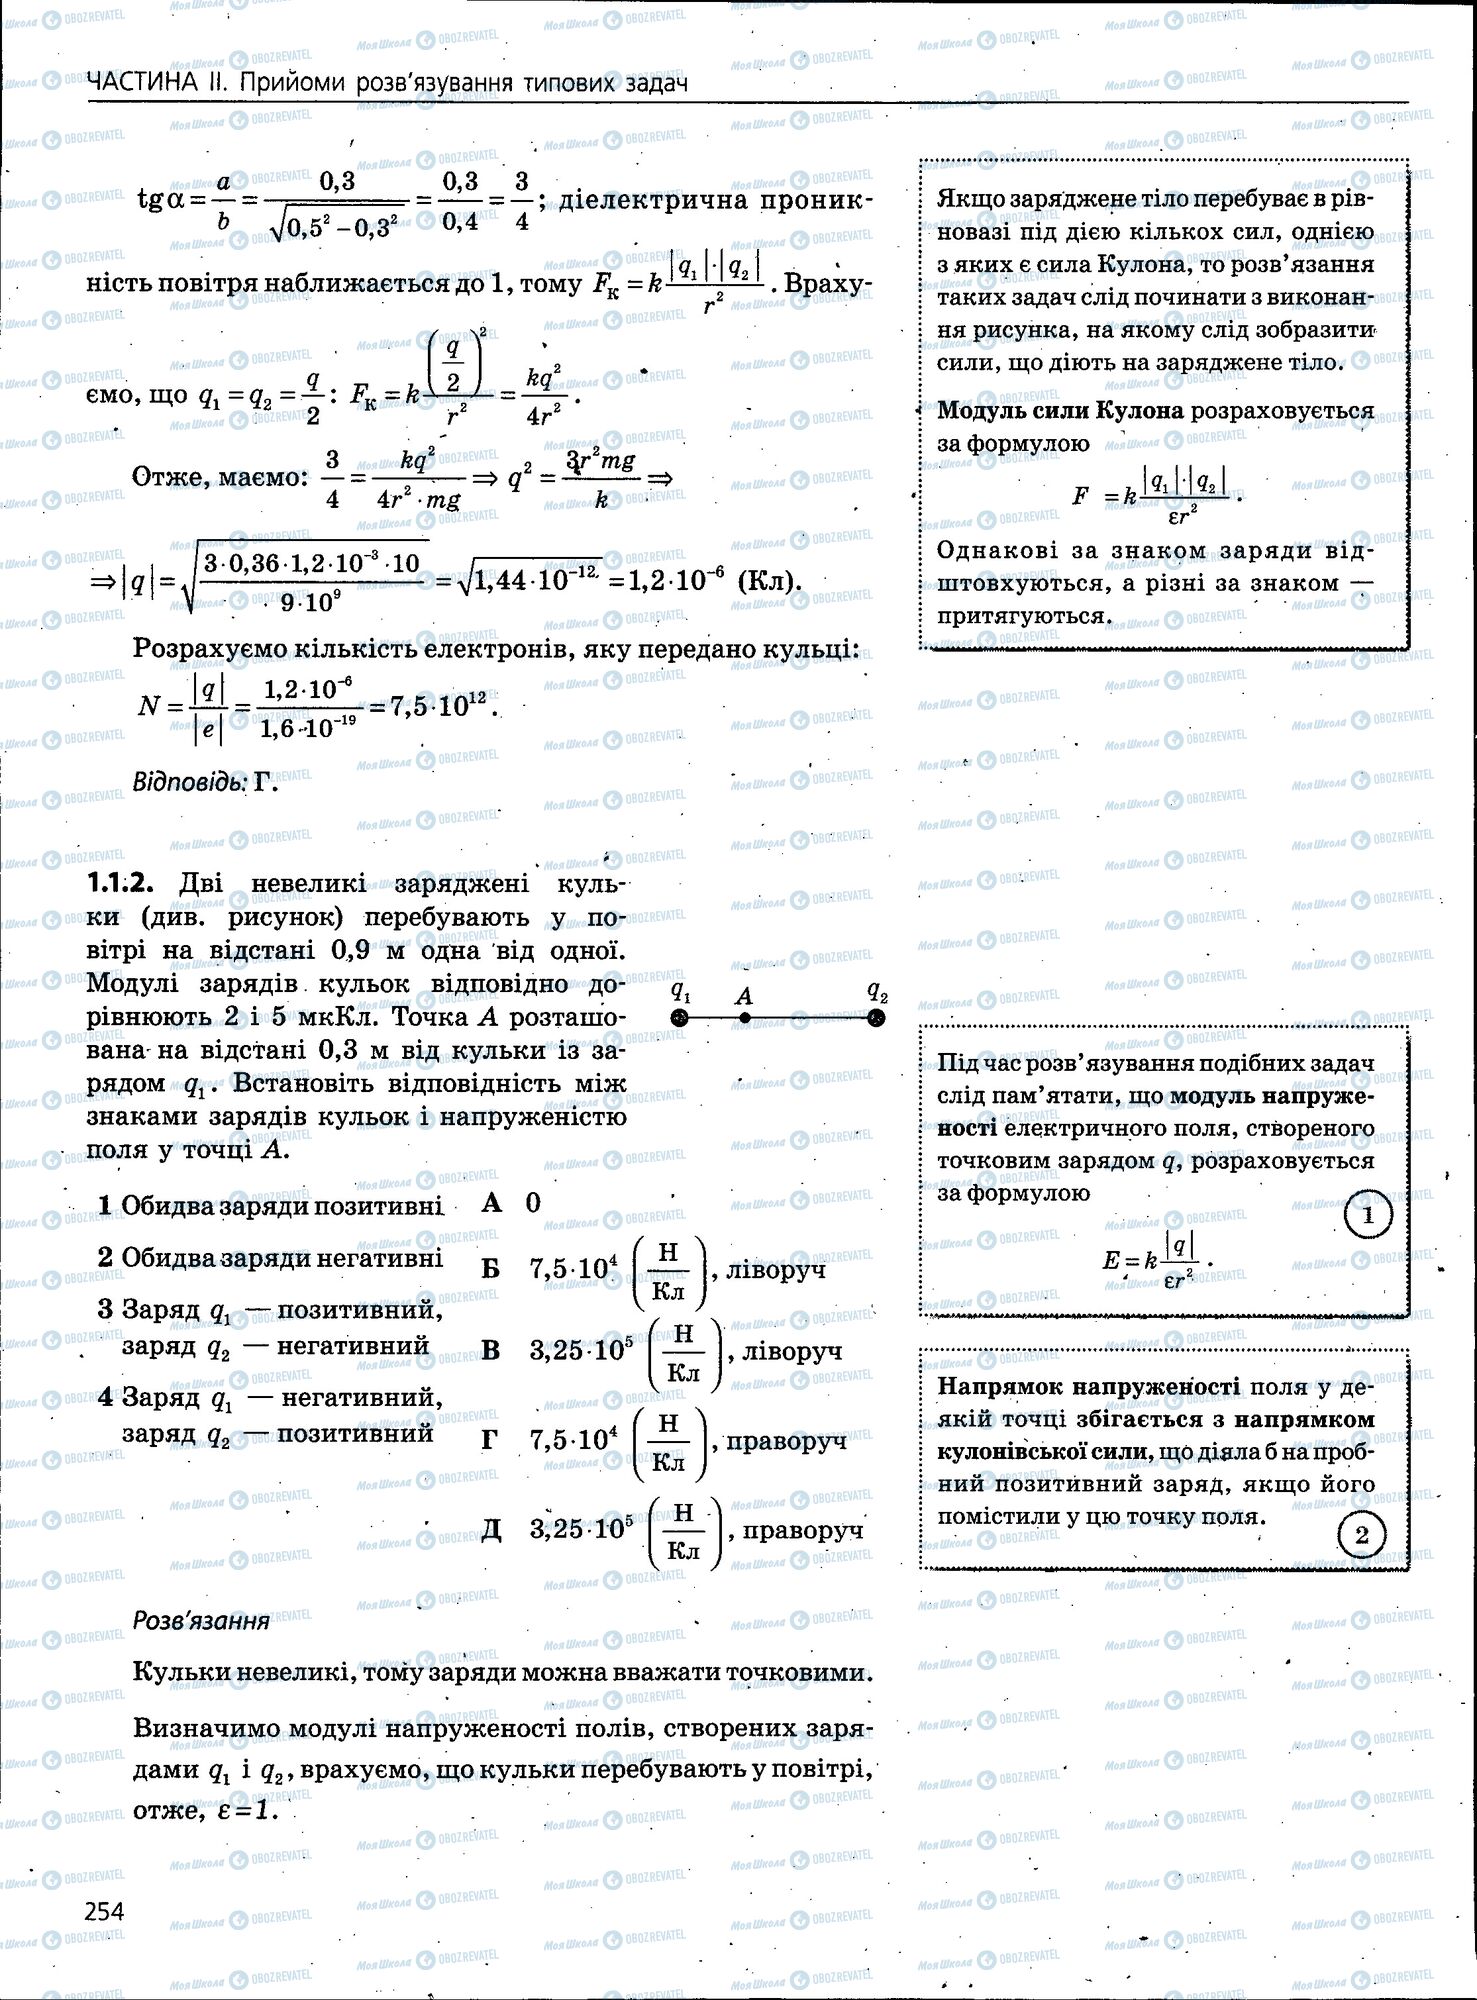 ЗНО Физика 11 класс страница 254